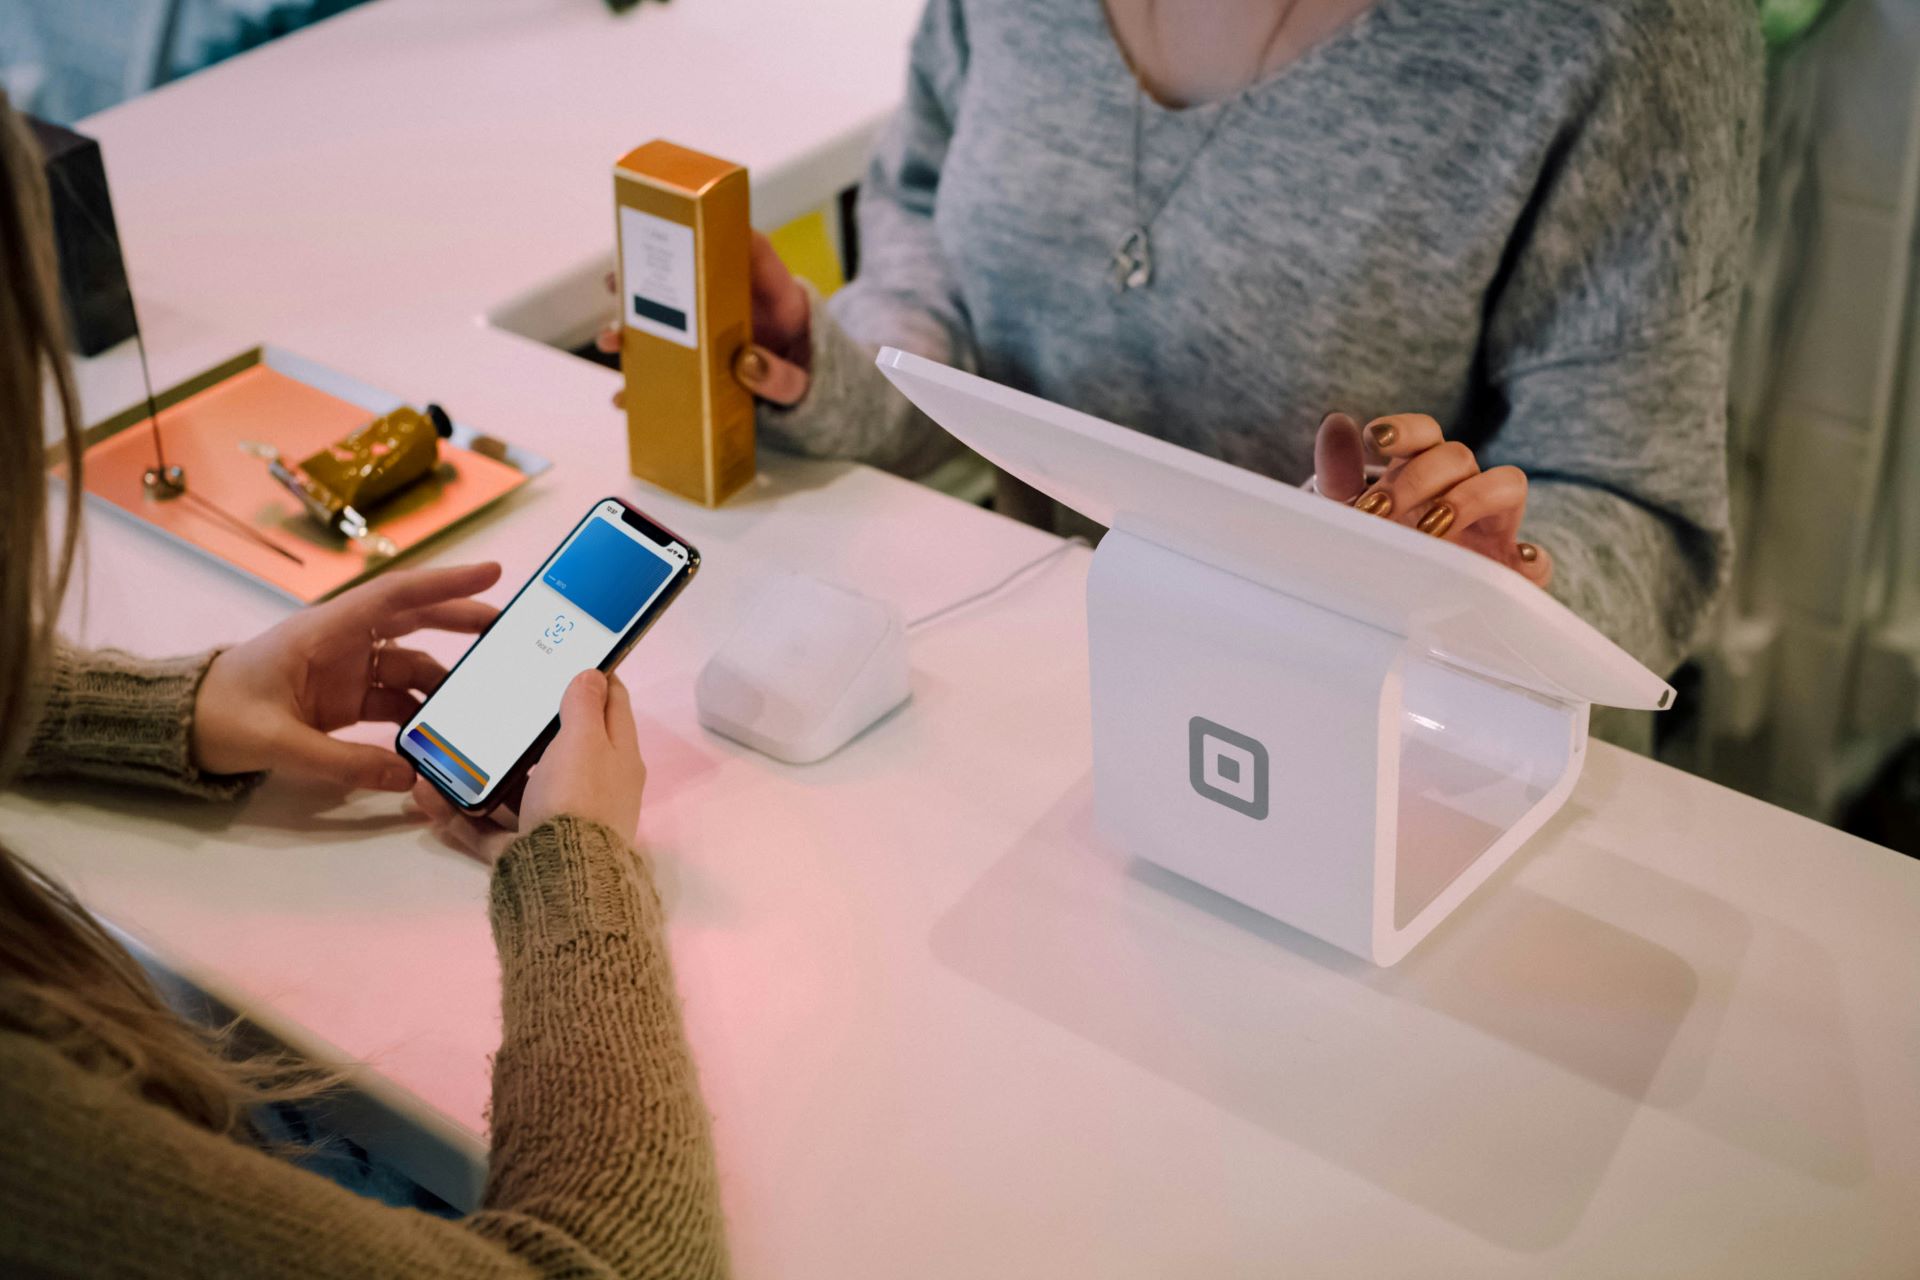 Az Apple Pay szolgáltatással rendelkező iPhone megnyílik, és megpróbál NFC fizetési terminálon fizetni